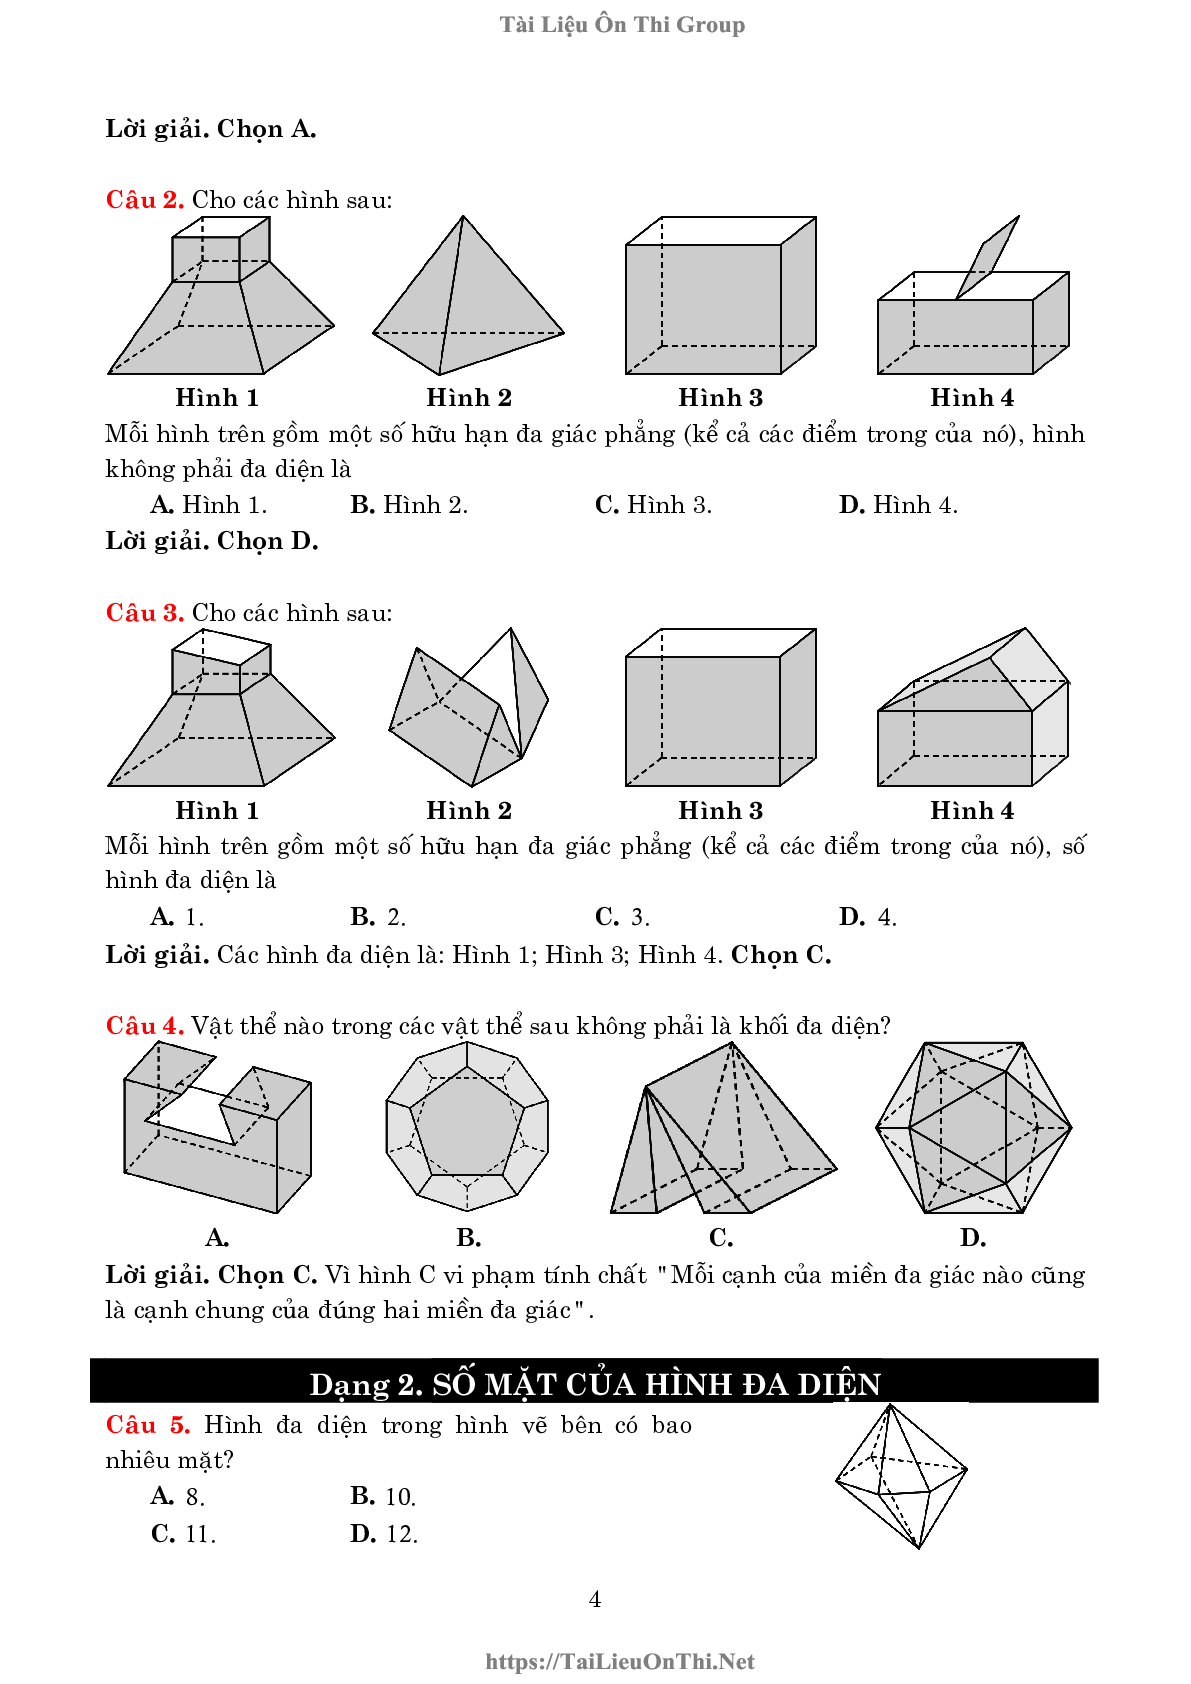 Lý thuyết và bài tập về khối đa diện và thể tích của chúng (trang 4)